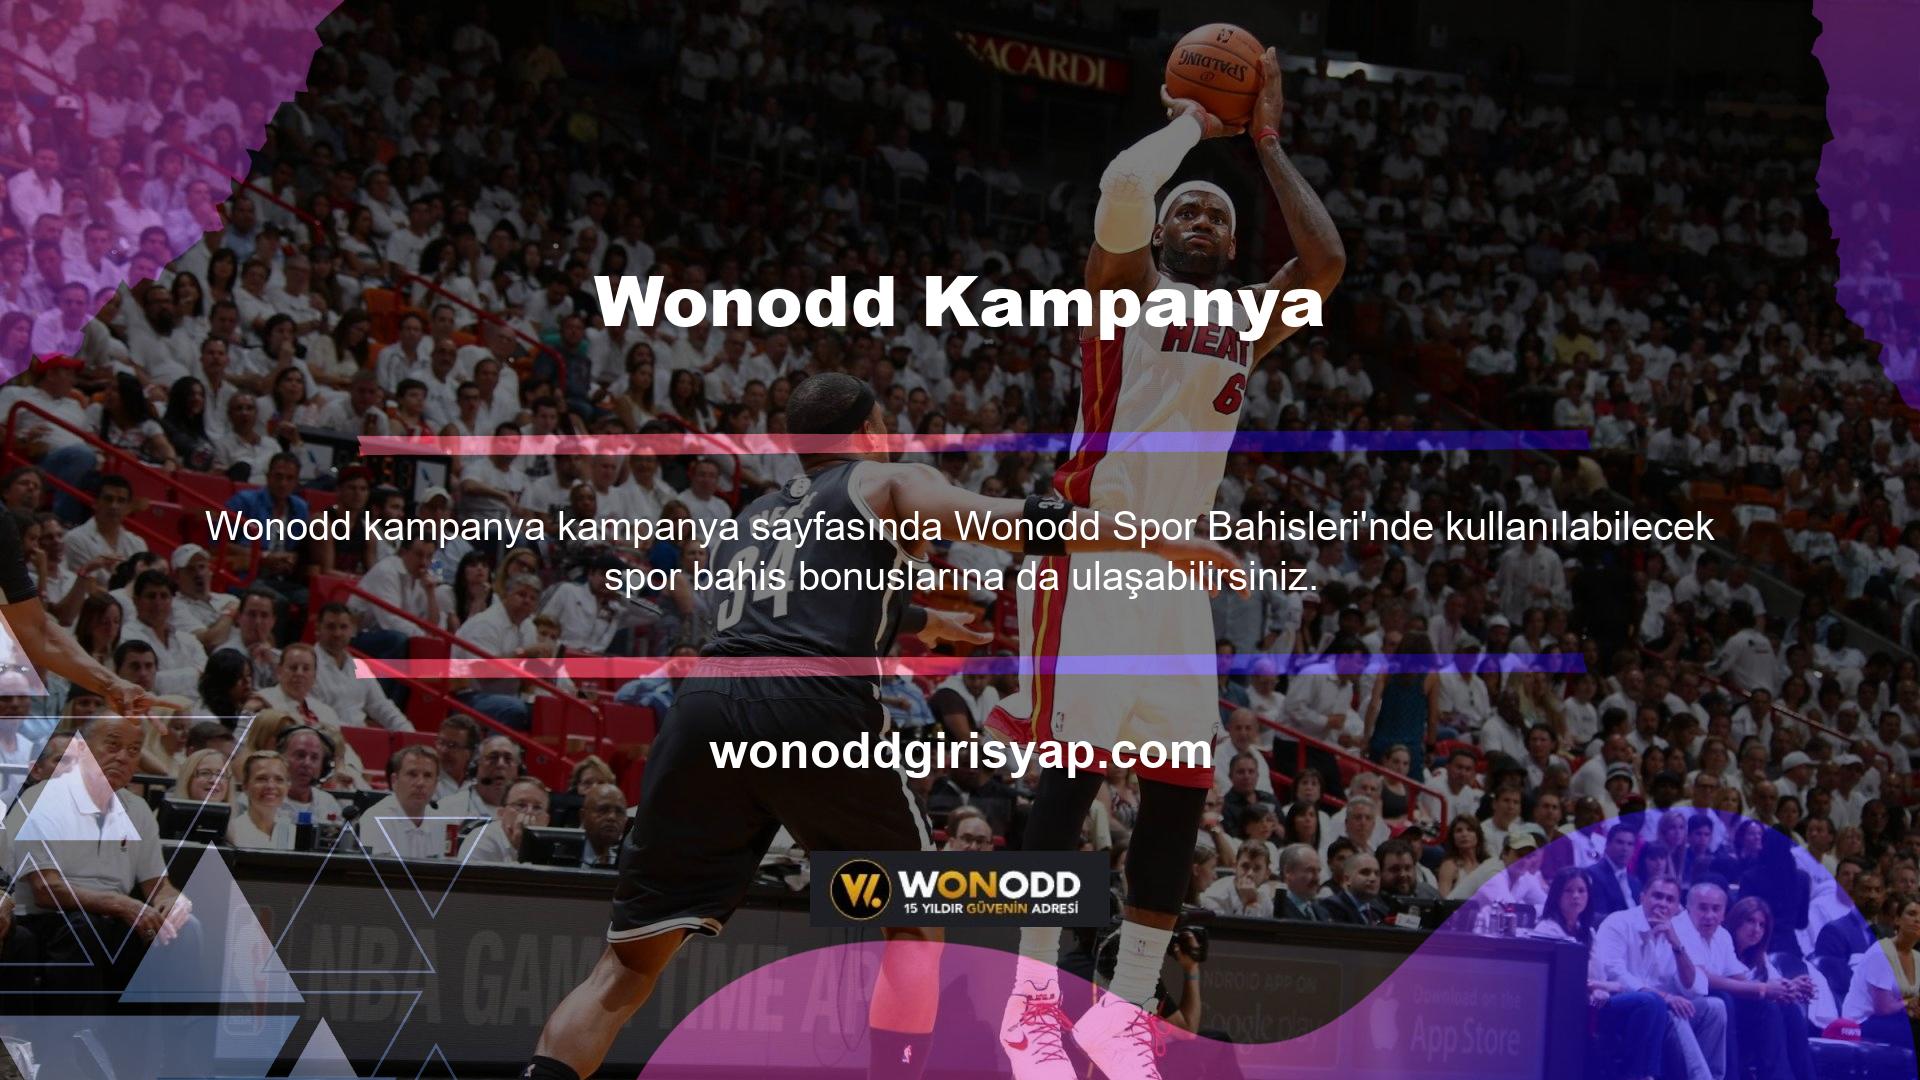 Wonodd, bu alanda birçok yeniliği web sitesi kullanıcılarına sunan, gelişmekte olan bir spor bahis şirketidir